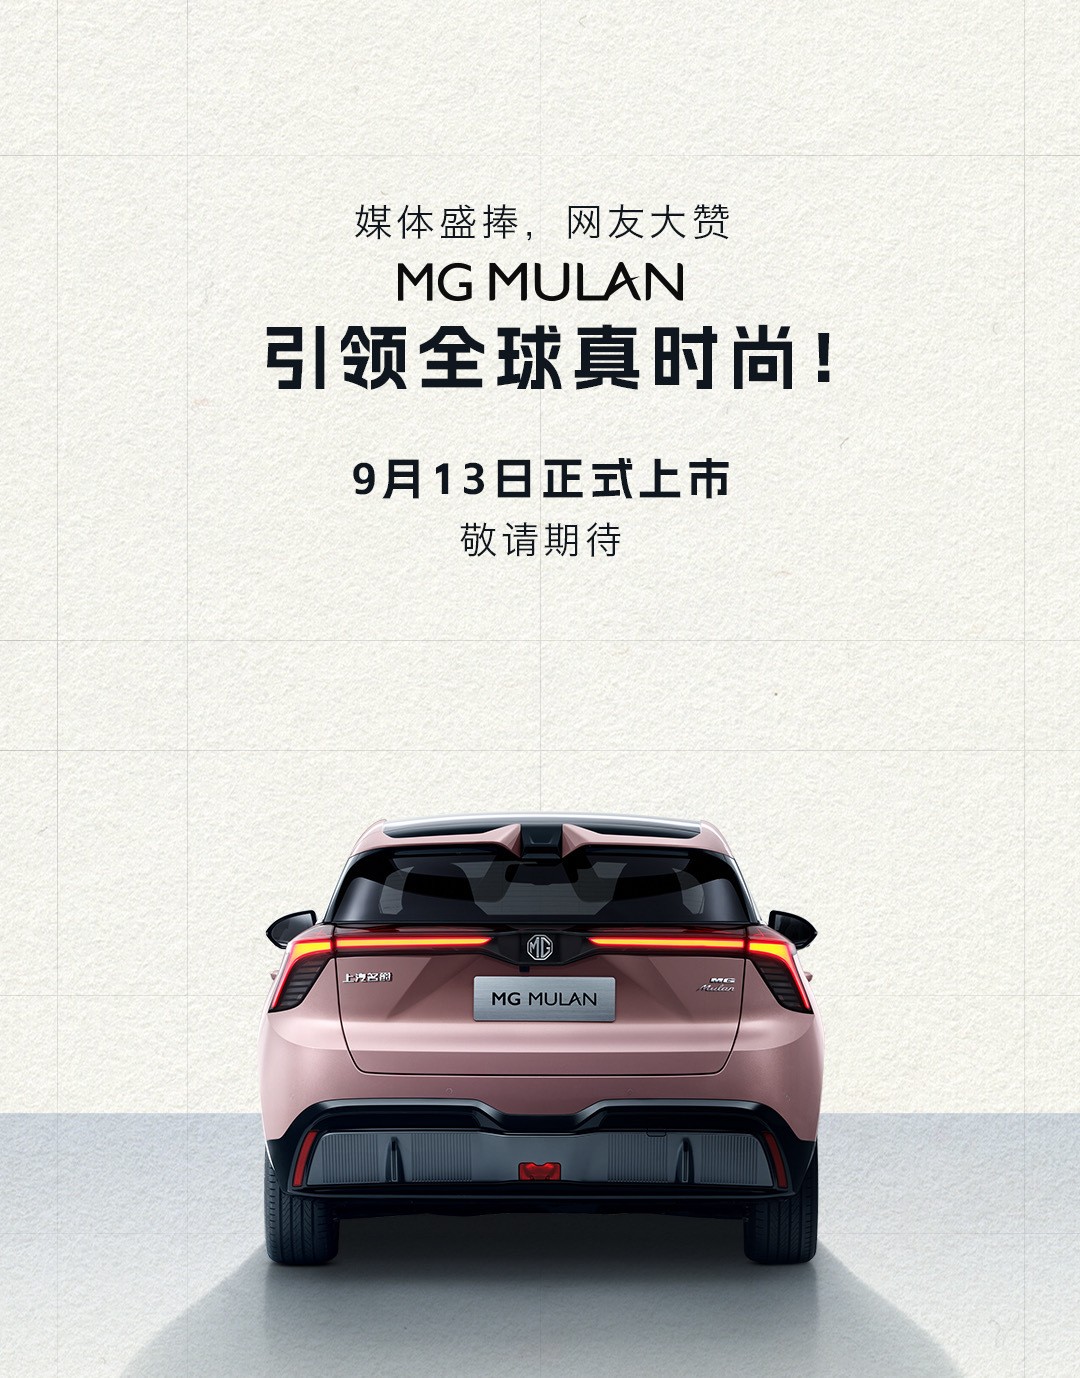 年轻人喜爱的运动型家用车来了 MG MULAN于9月13日全球上市